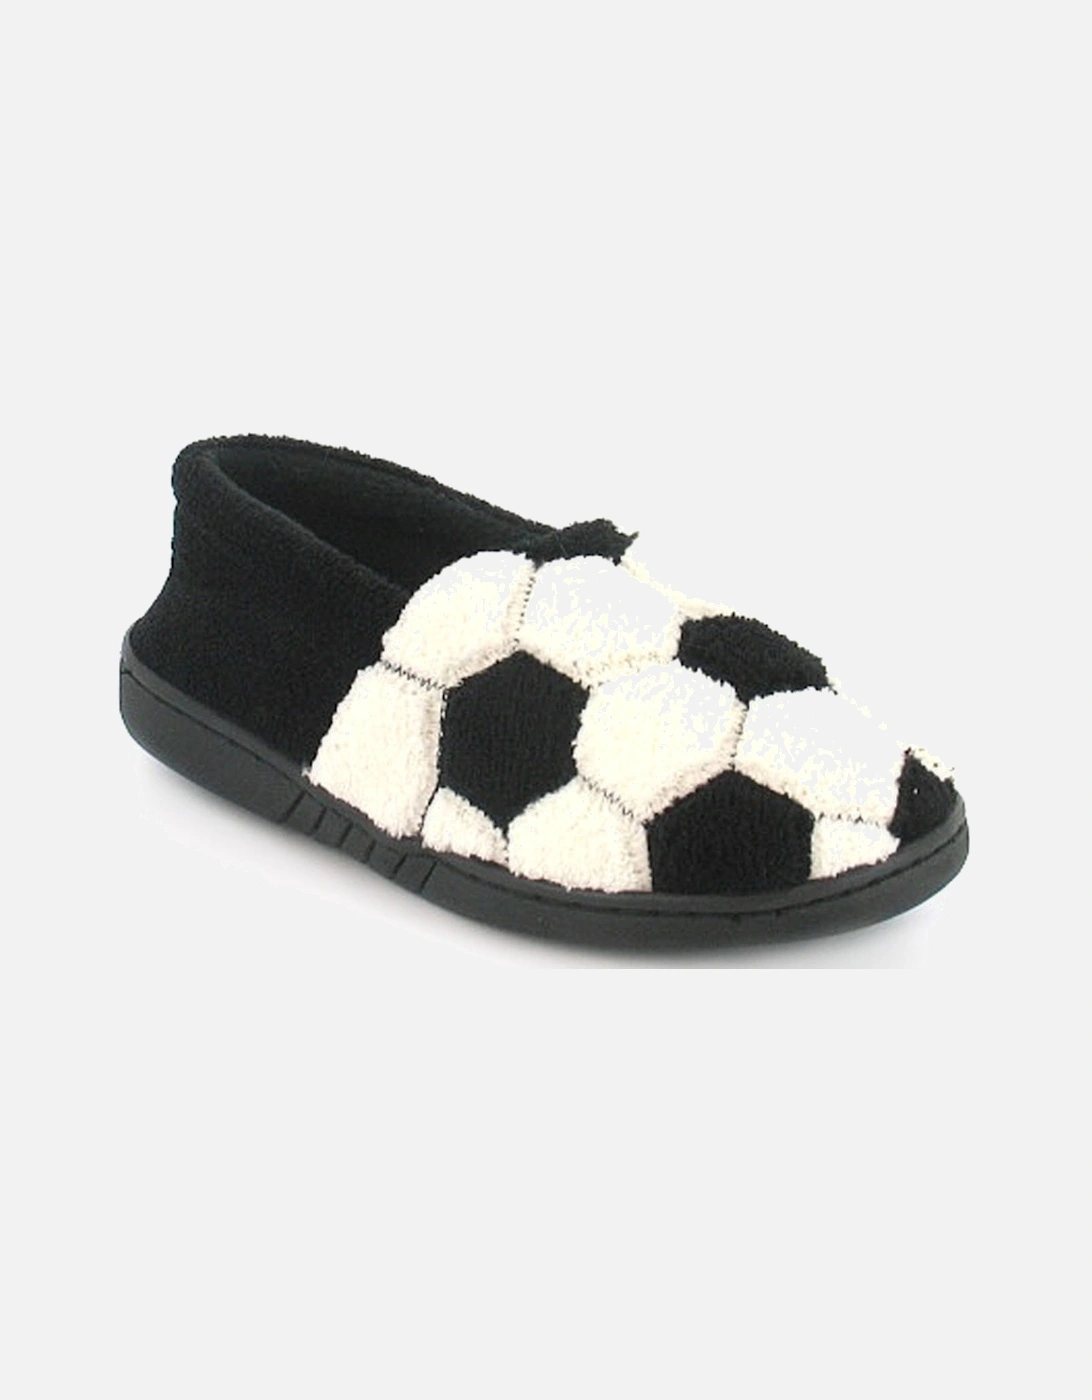 Boys Novelty Slippers Football Hernandez Slip On black white UK Size, 6 of 5